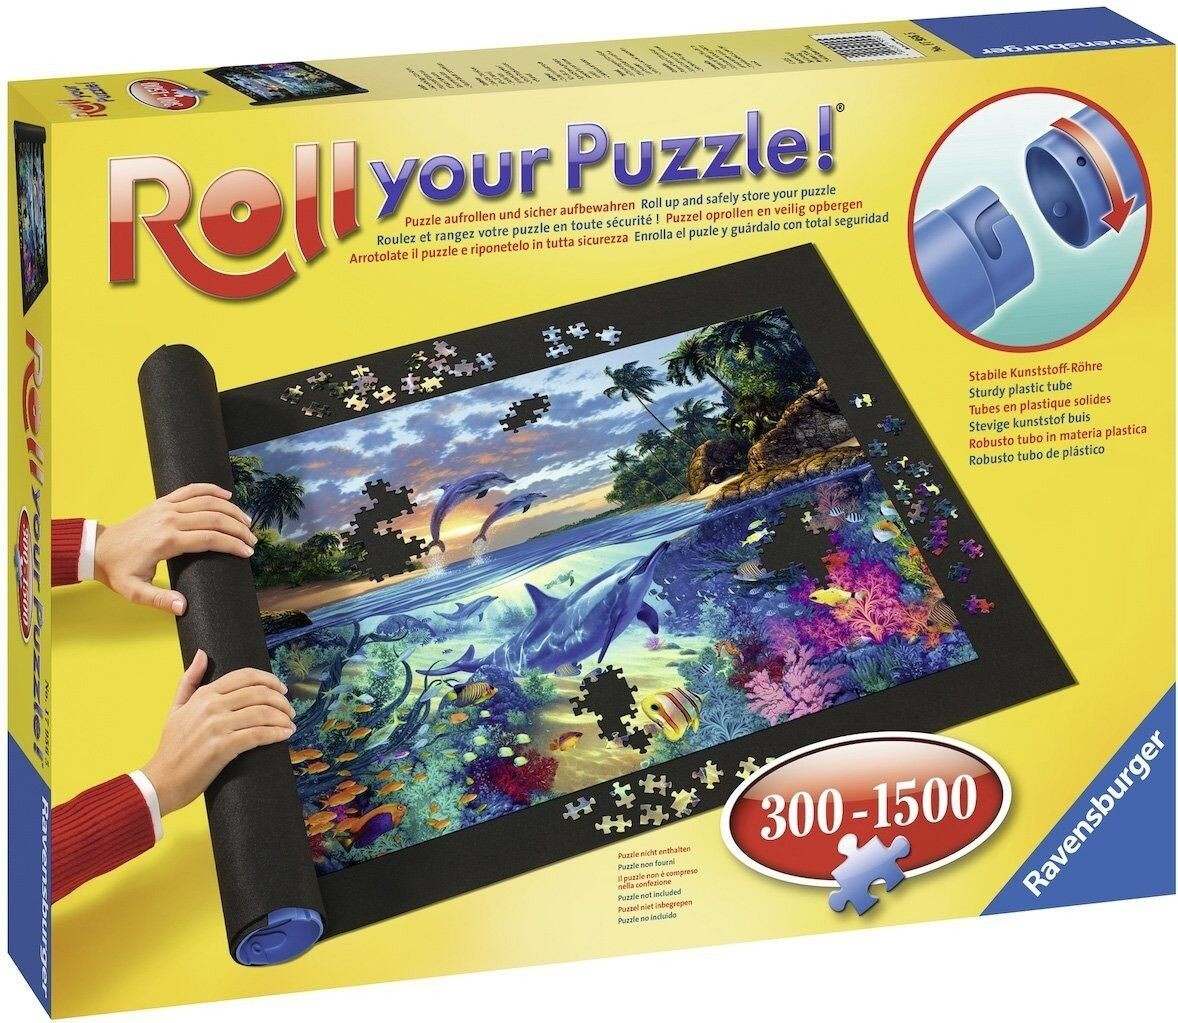 Tappetino per Puzzle 500-1500 Pezzi - Trefl - Puzzle mat - Puzzle set e  accessori - Giocattoli